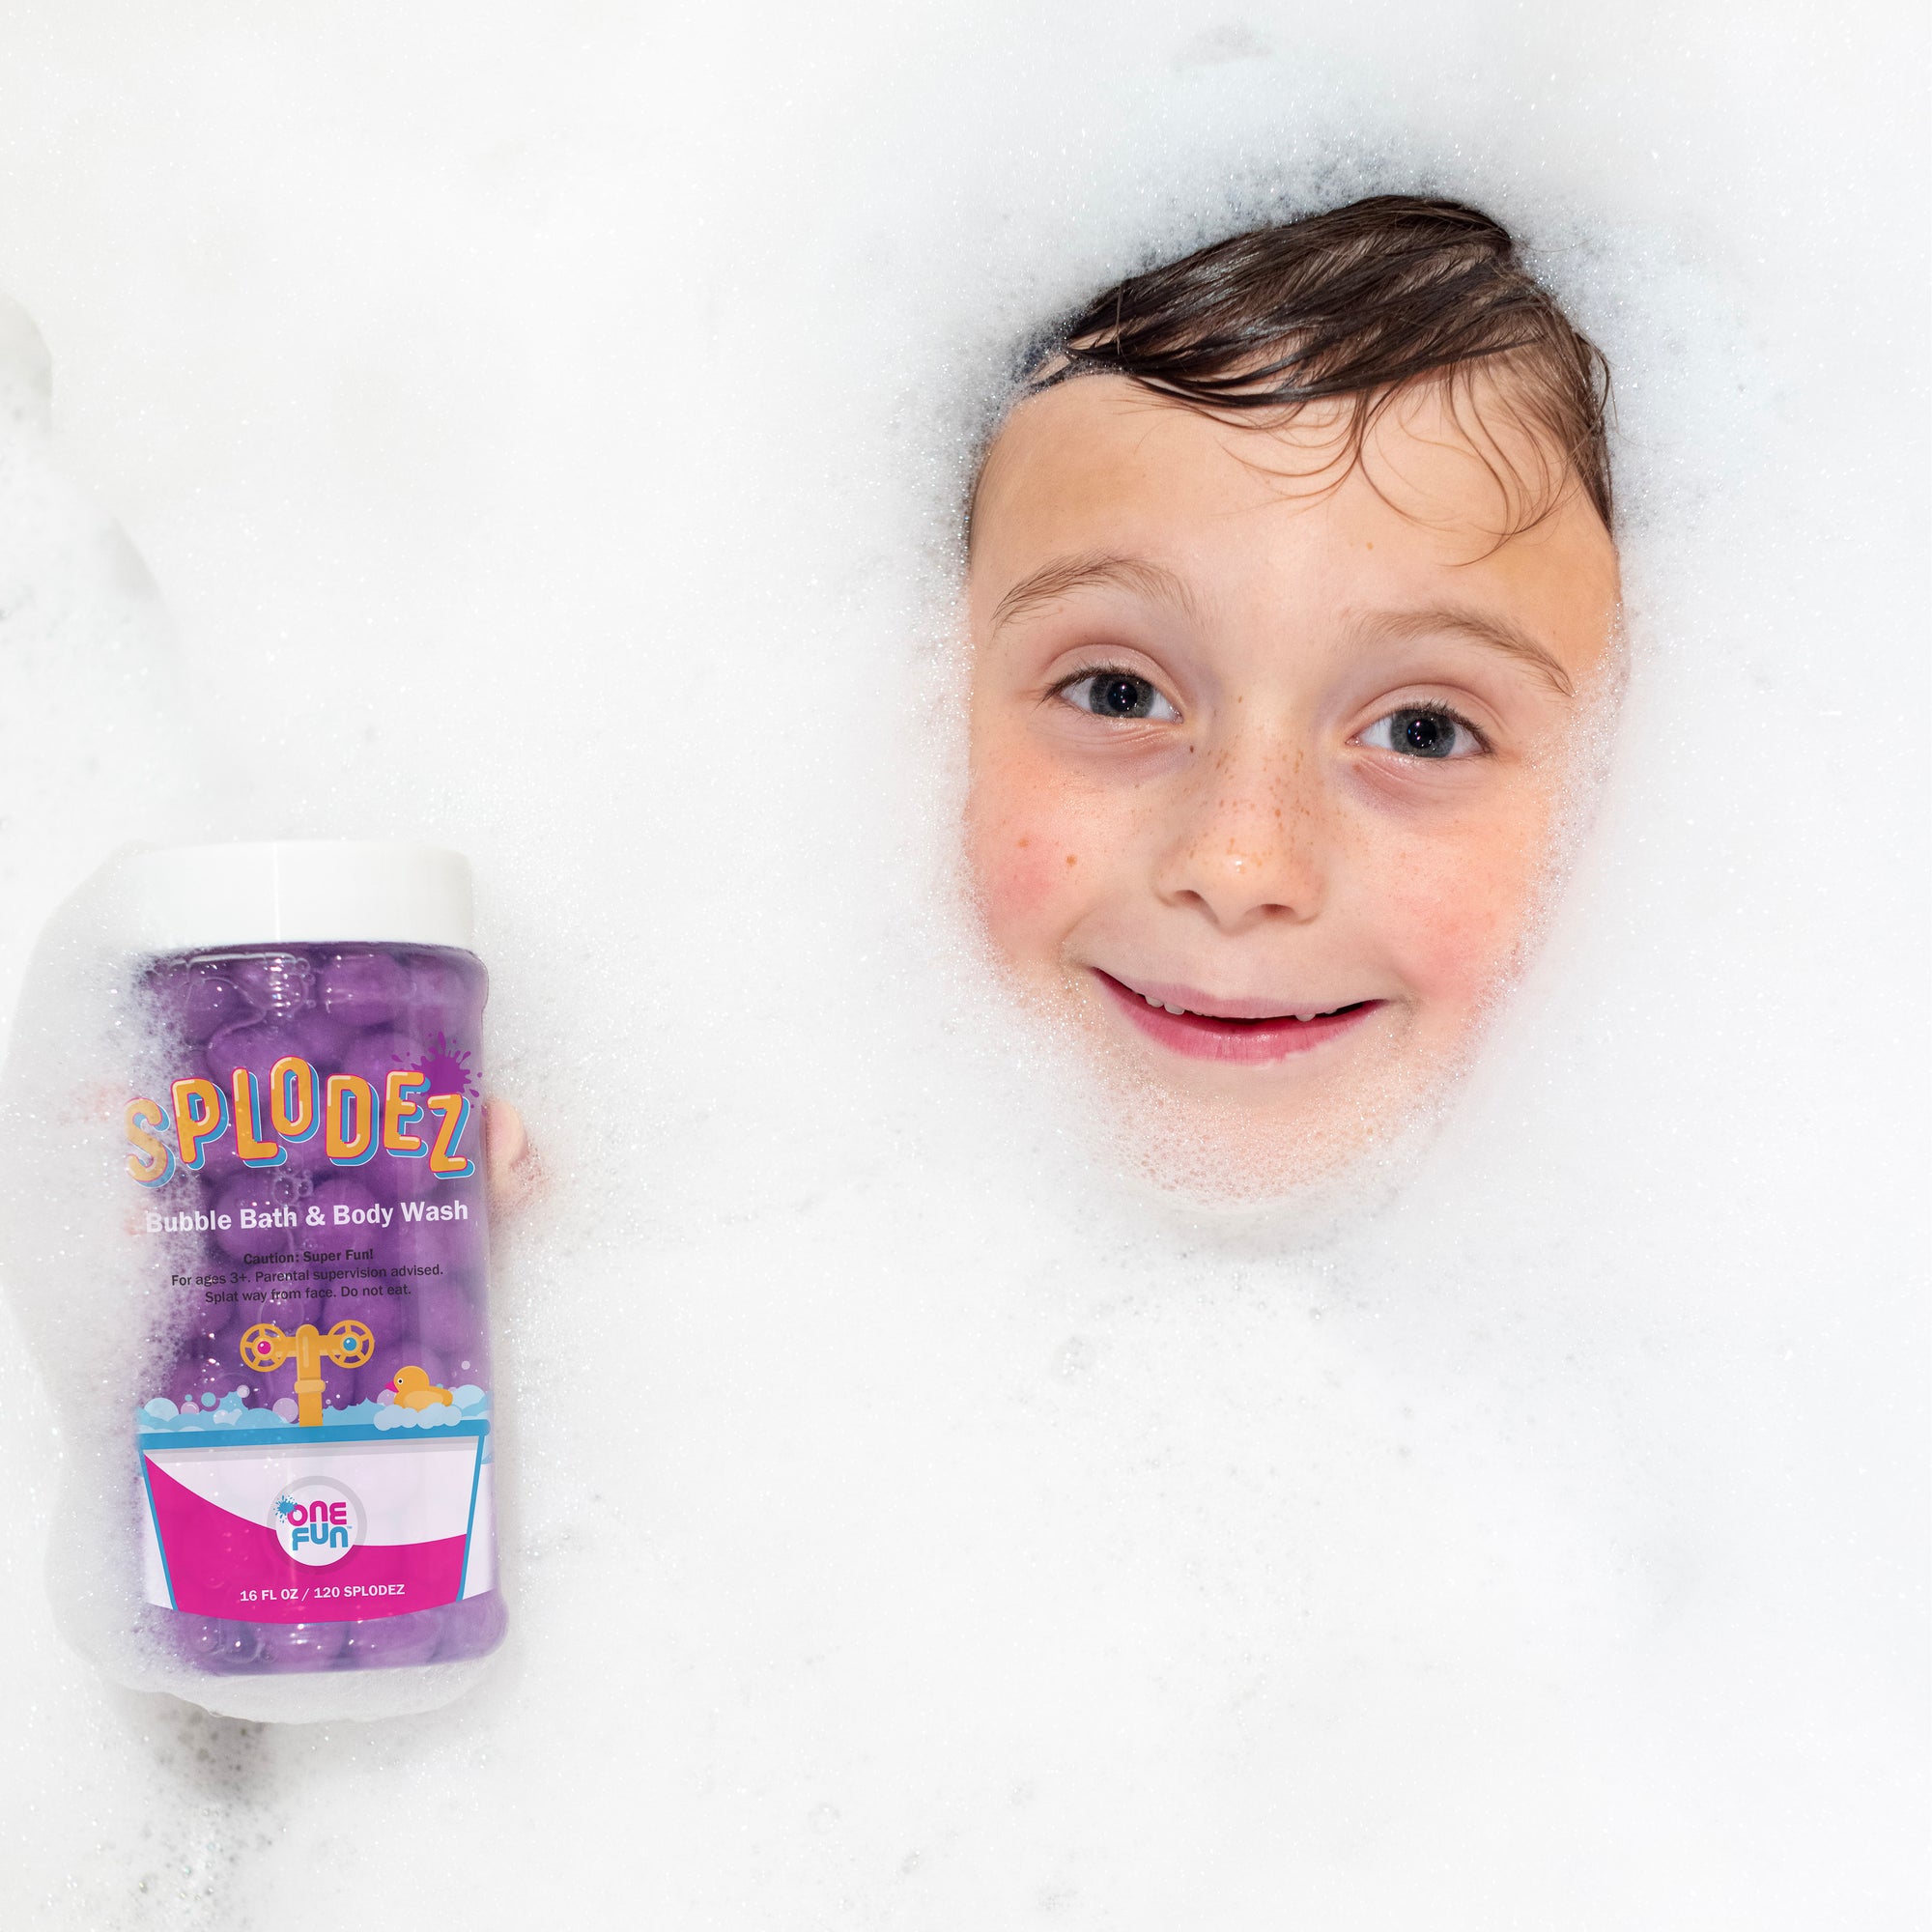 SPLODEZ Bubble Bath & Body Wash